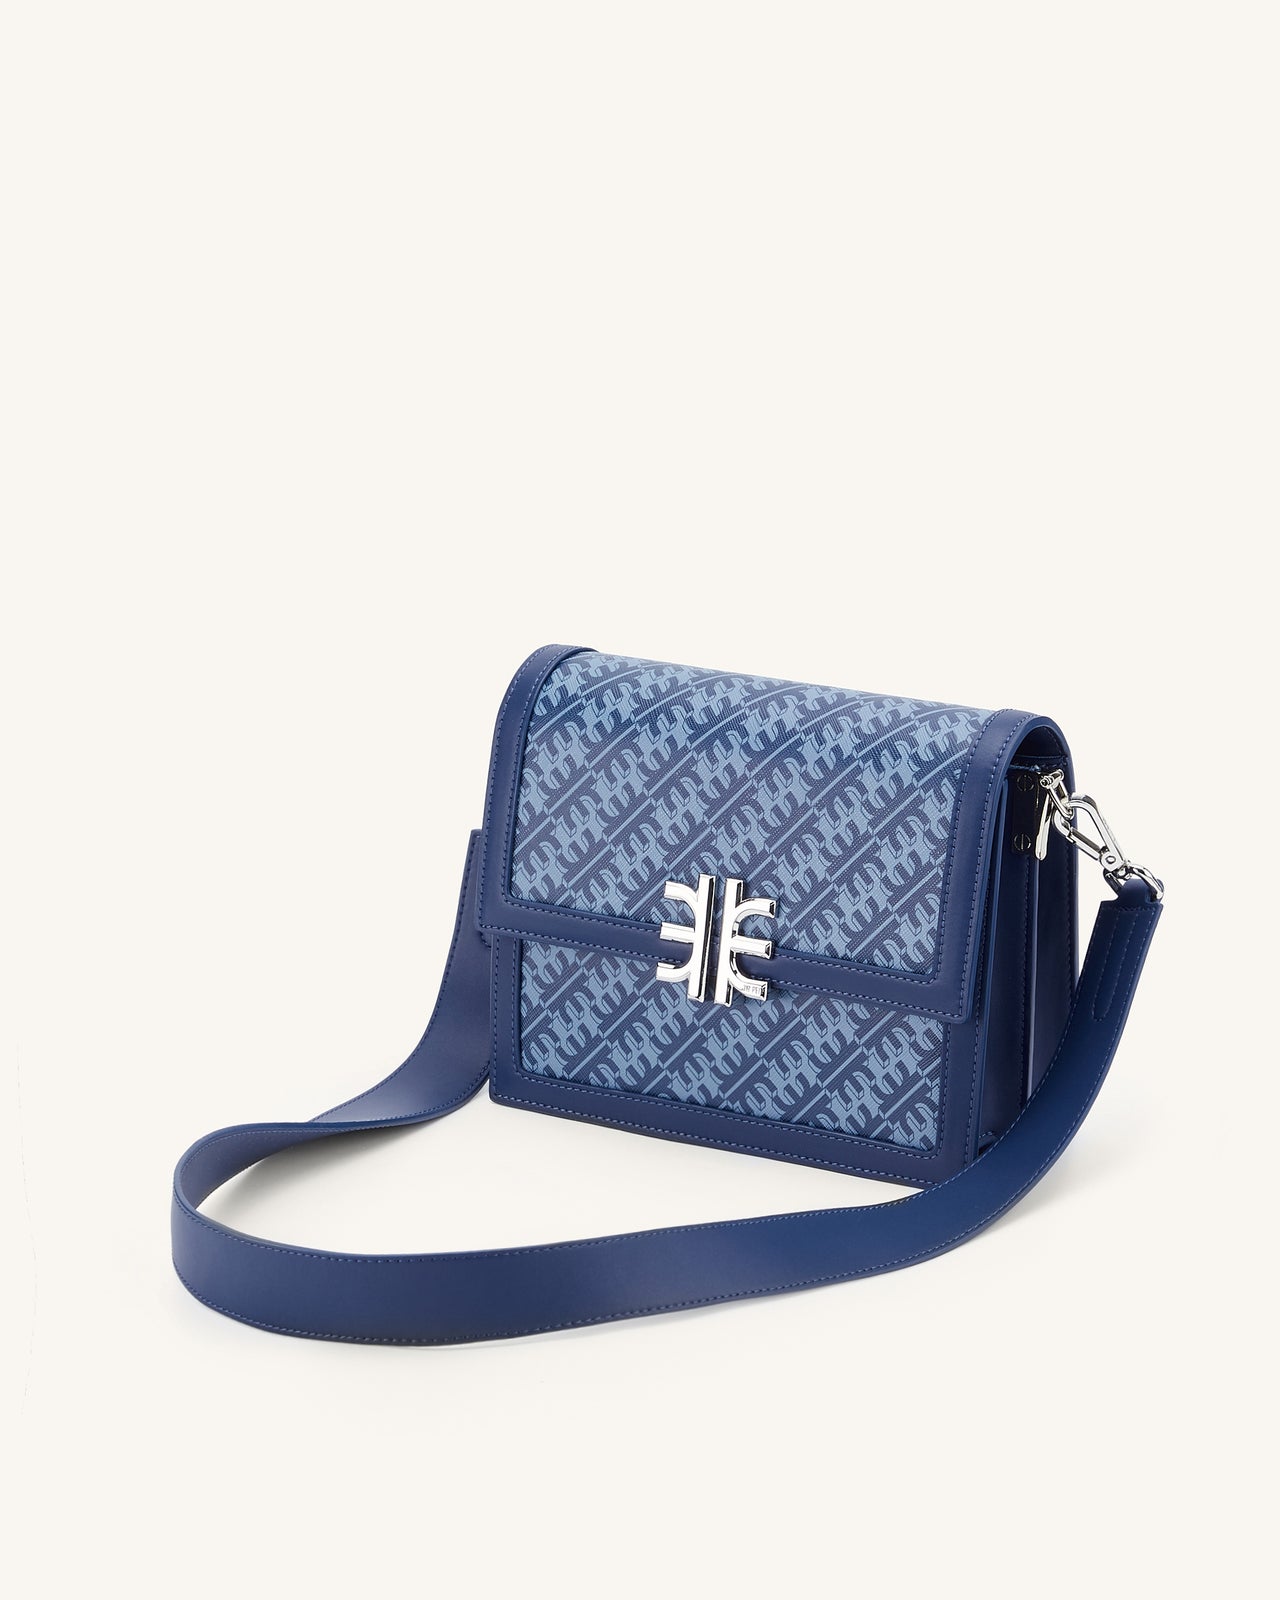 JW PEI - The Envelope Chain Crossbody Bag Styled by @efstathiatzv